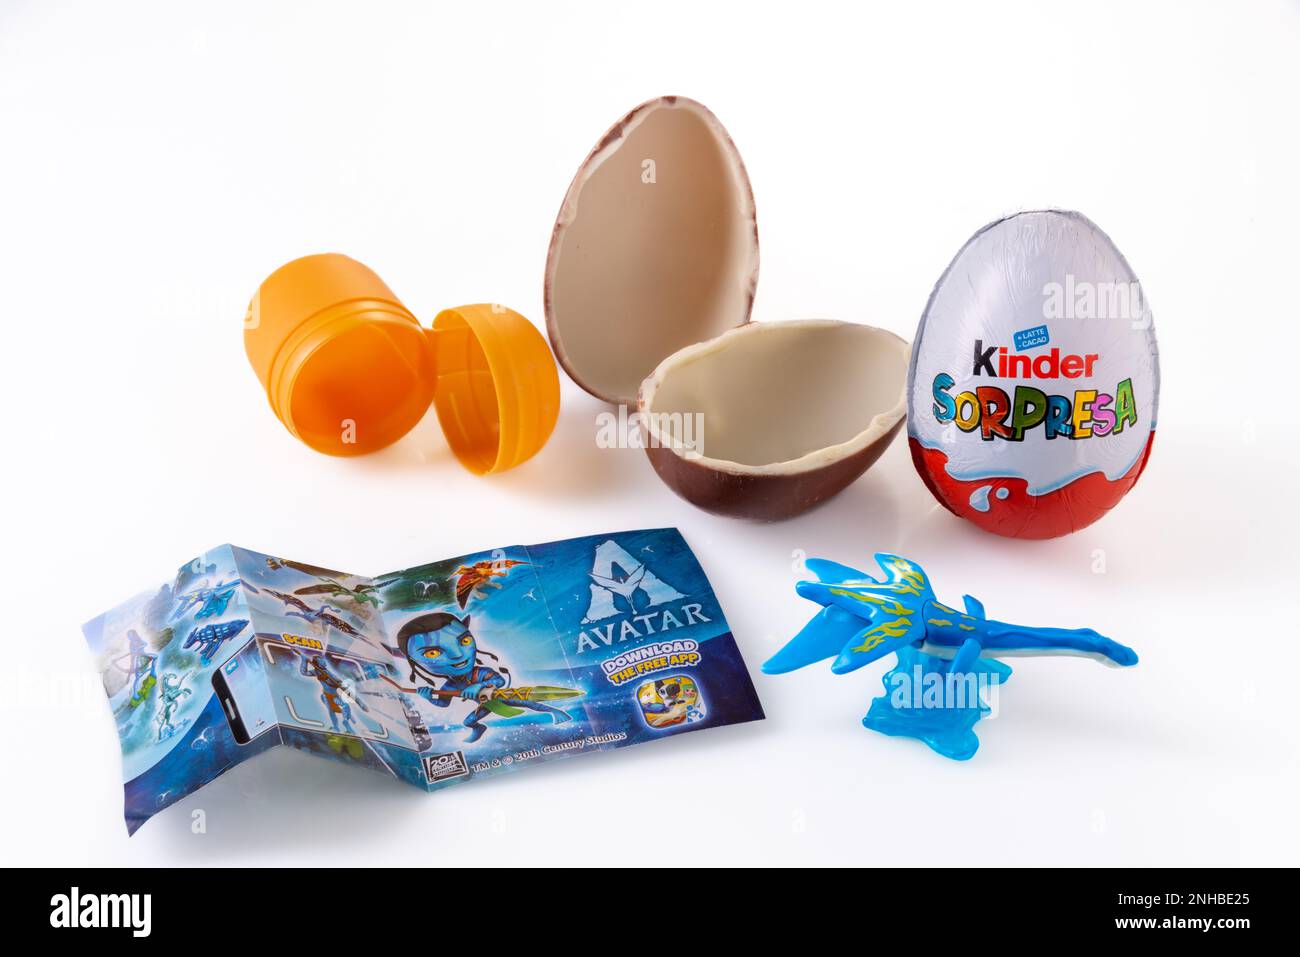 Alba, Italia - 20 febbraio 2023: Kinder sorpresa latte uova al cioccolato con gadget a sorpresa Avatar giocattolo. Kinder Surprise è un marchio Ferrero famoso in tutto il mondo Foto Stock